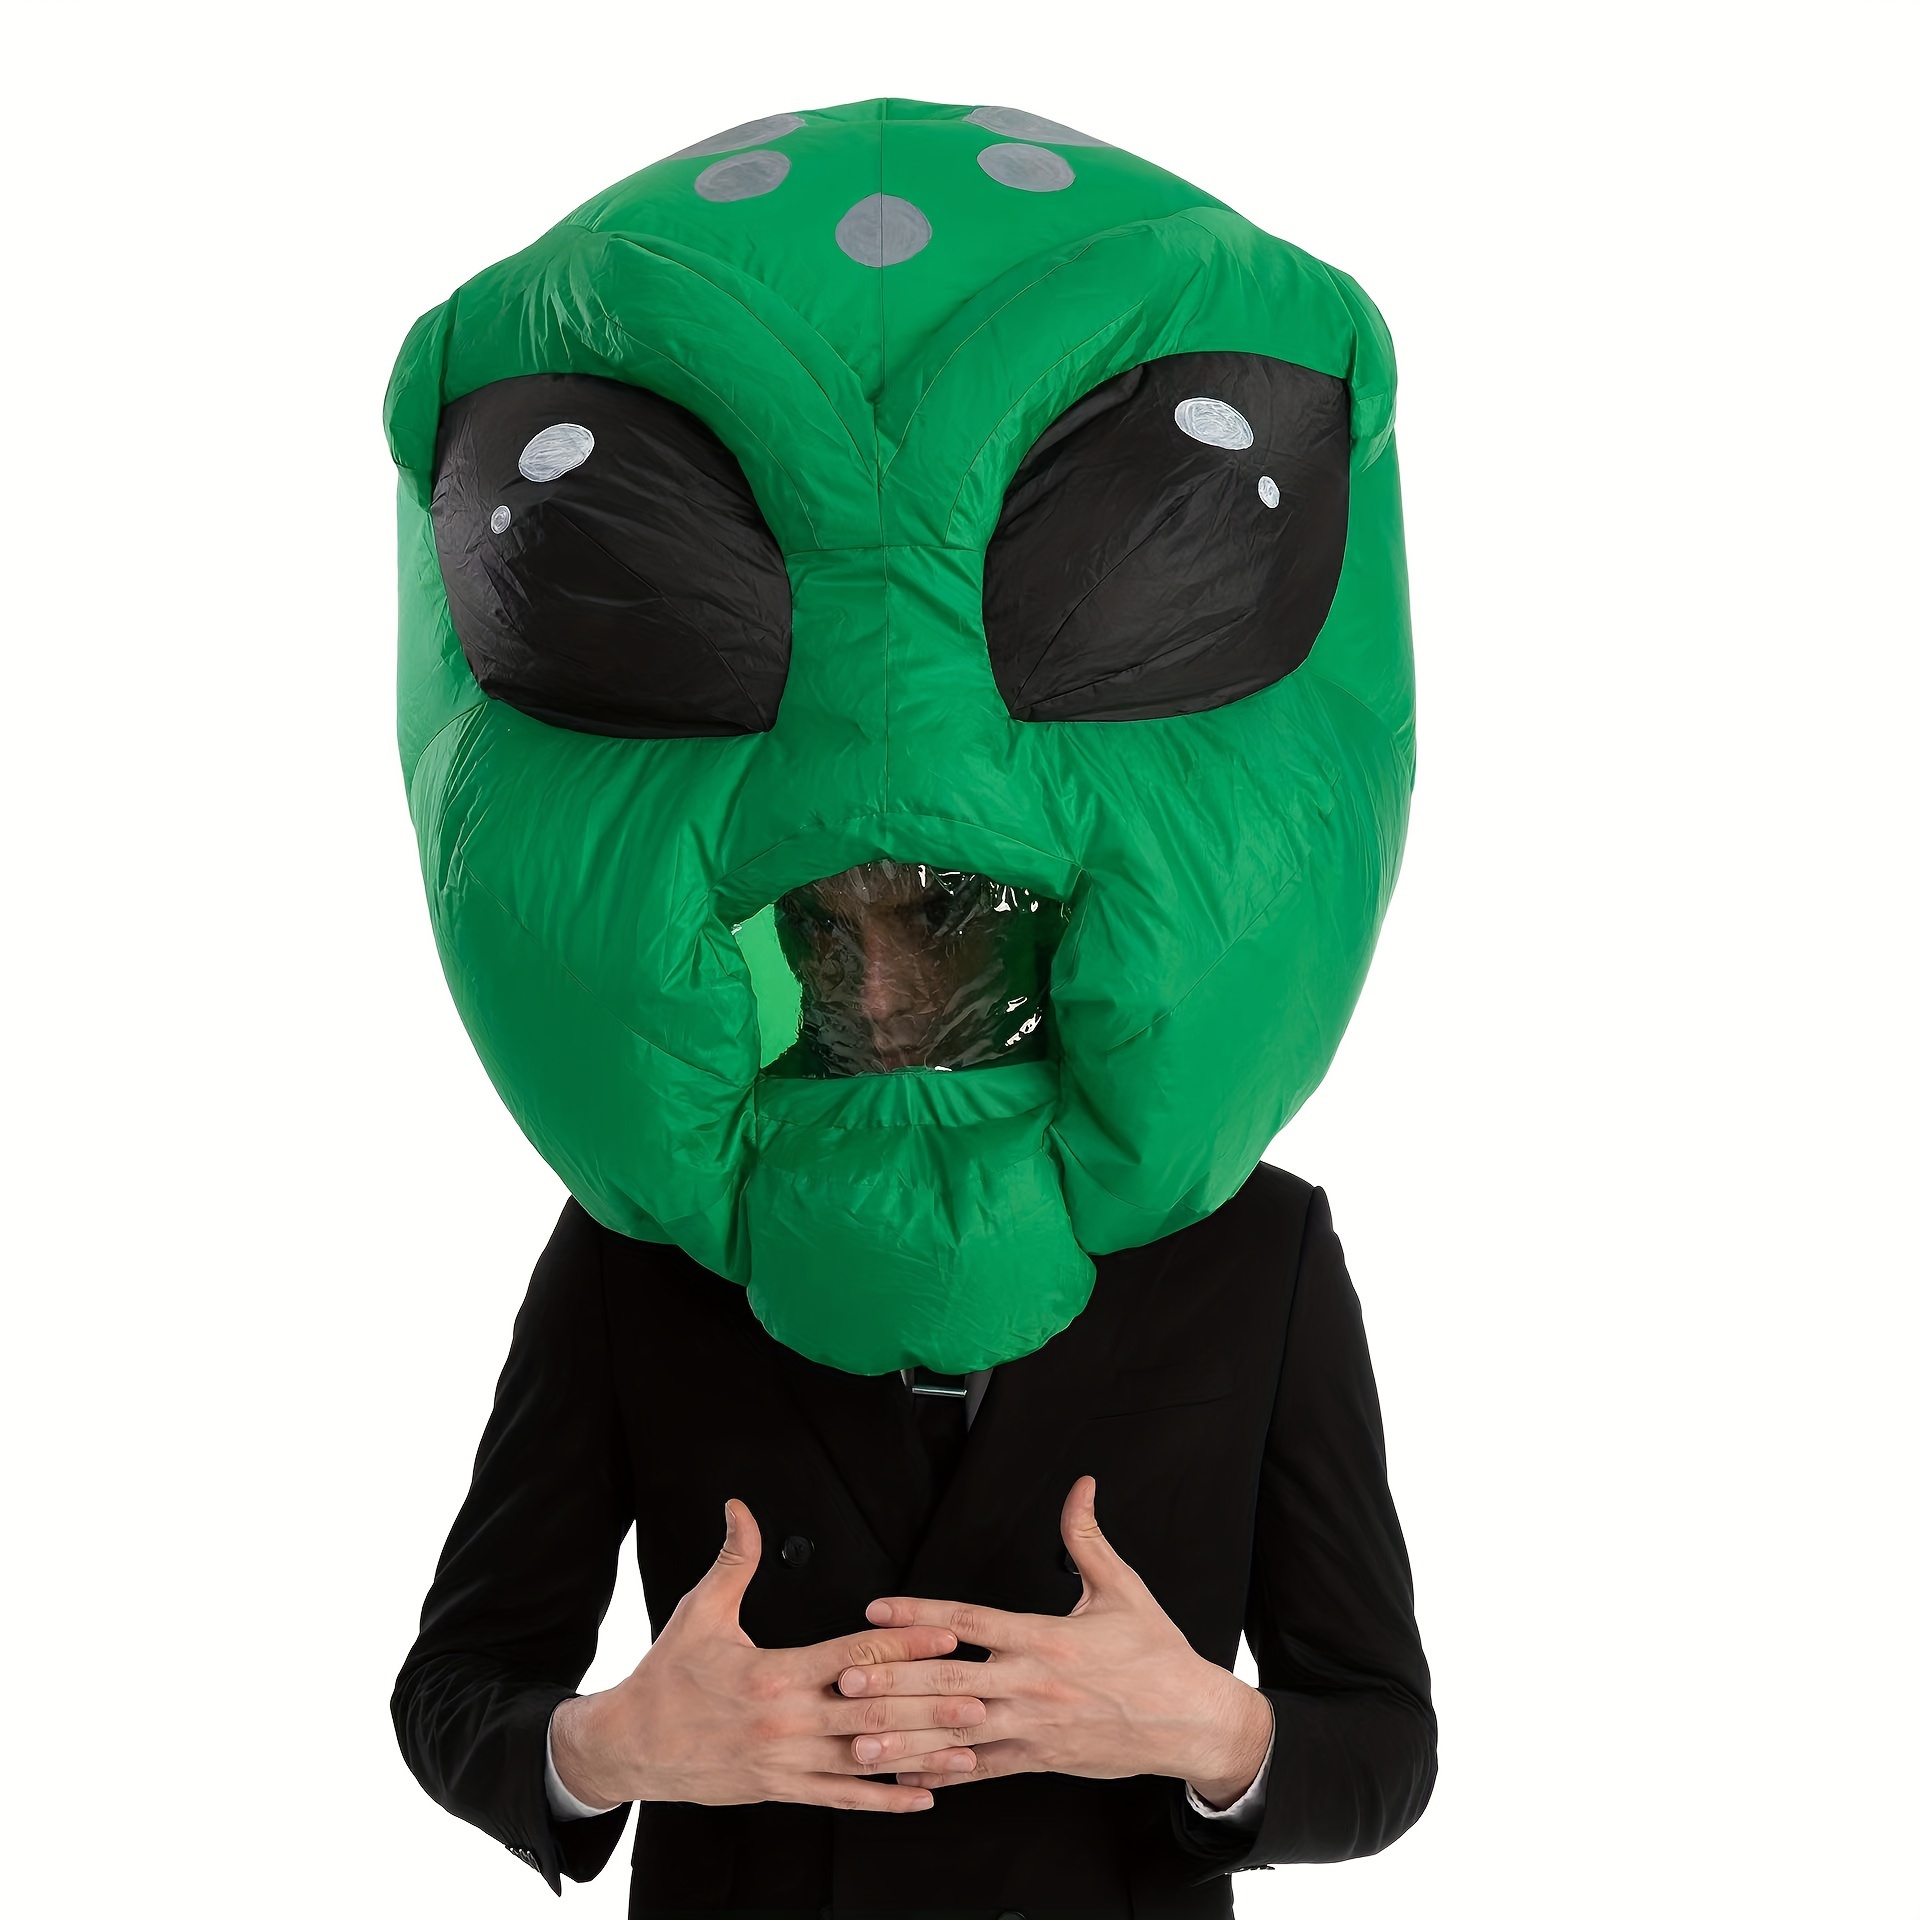 Disfraz alien inflable para Halloween por 18,12€ y para niños por 16,65€.